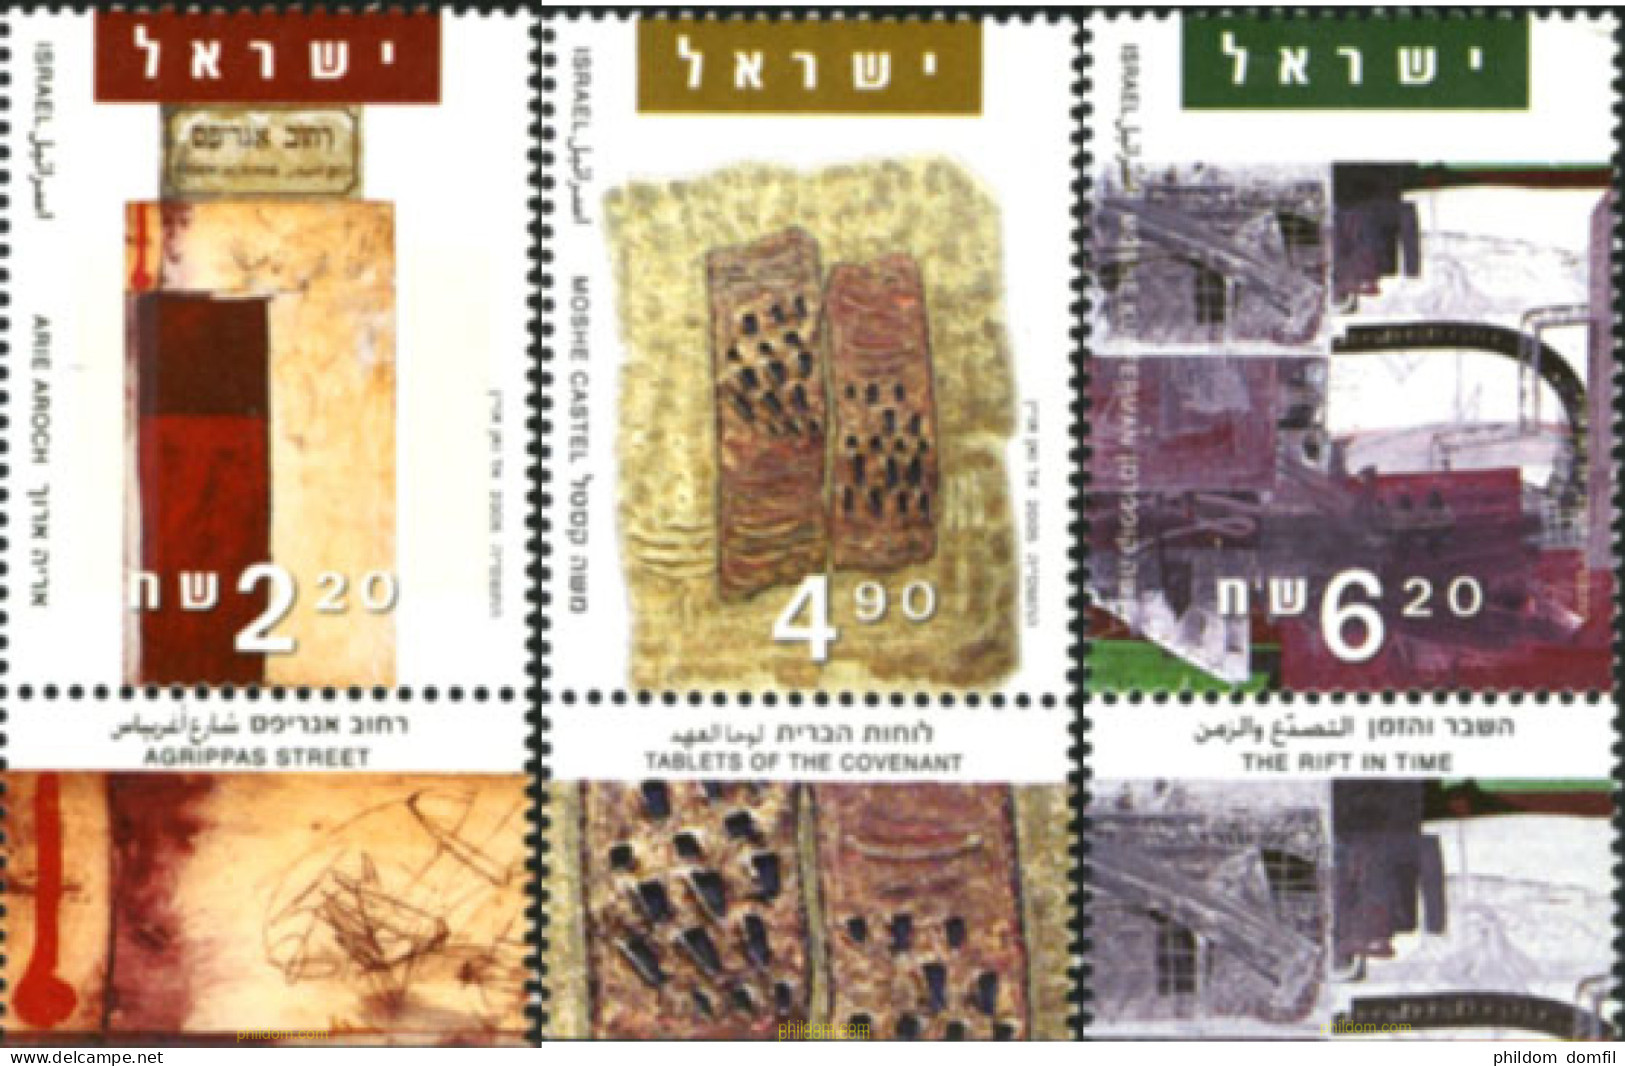 328809 MNH ISRAEL 2005 ARTE DE ISRAEL - Nuevos (sin Tab)